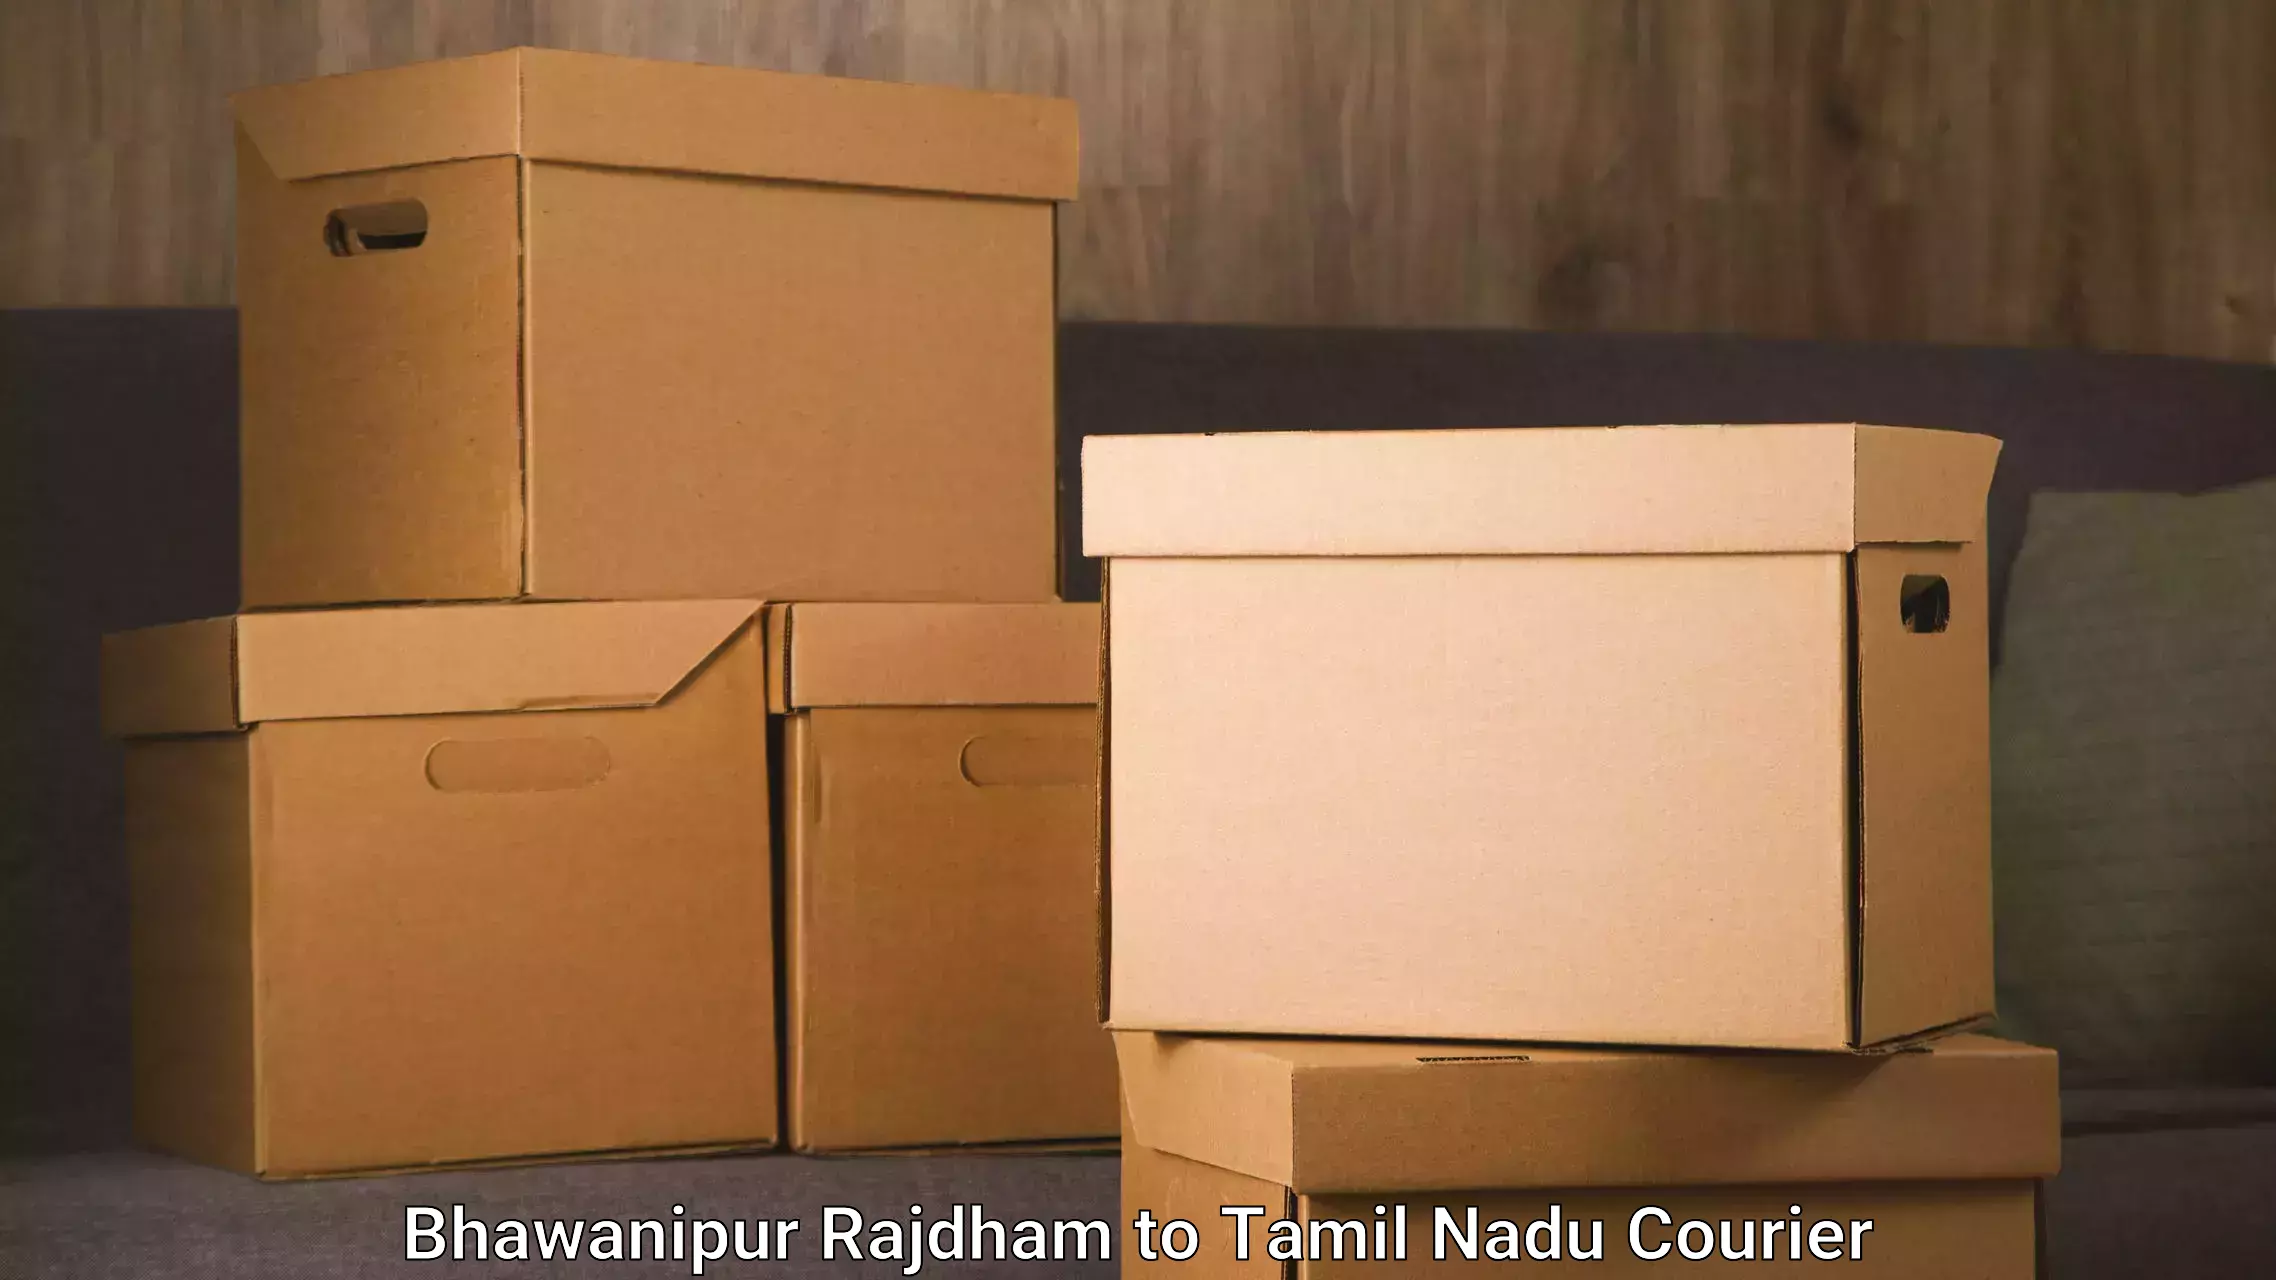 Professional furniture movers Bhawanipur Rajdham to Tamil Nadu